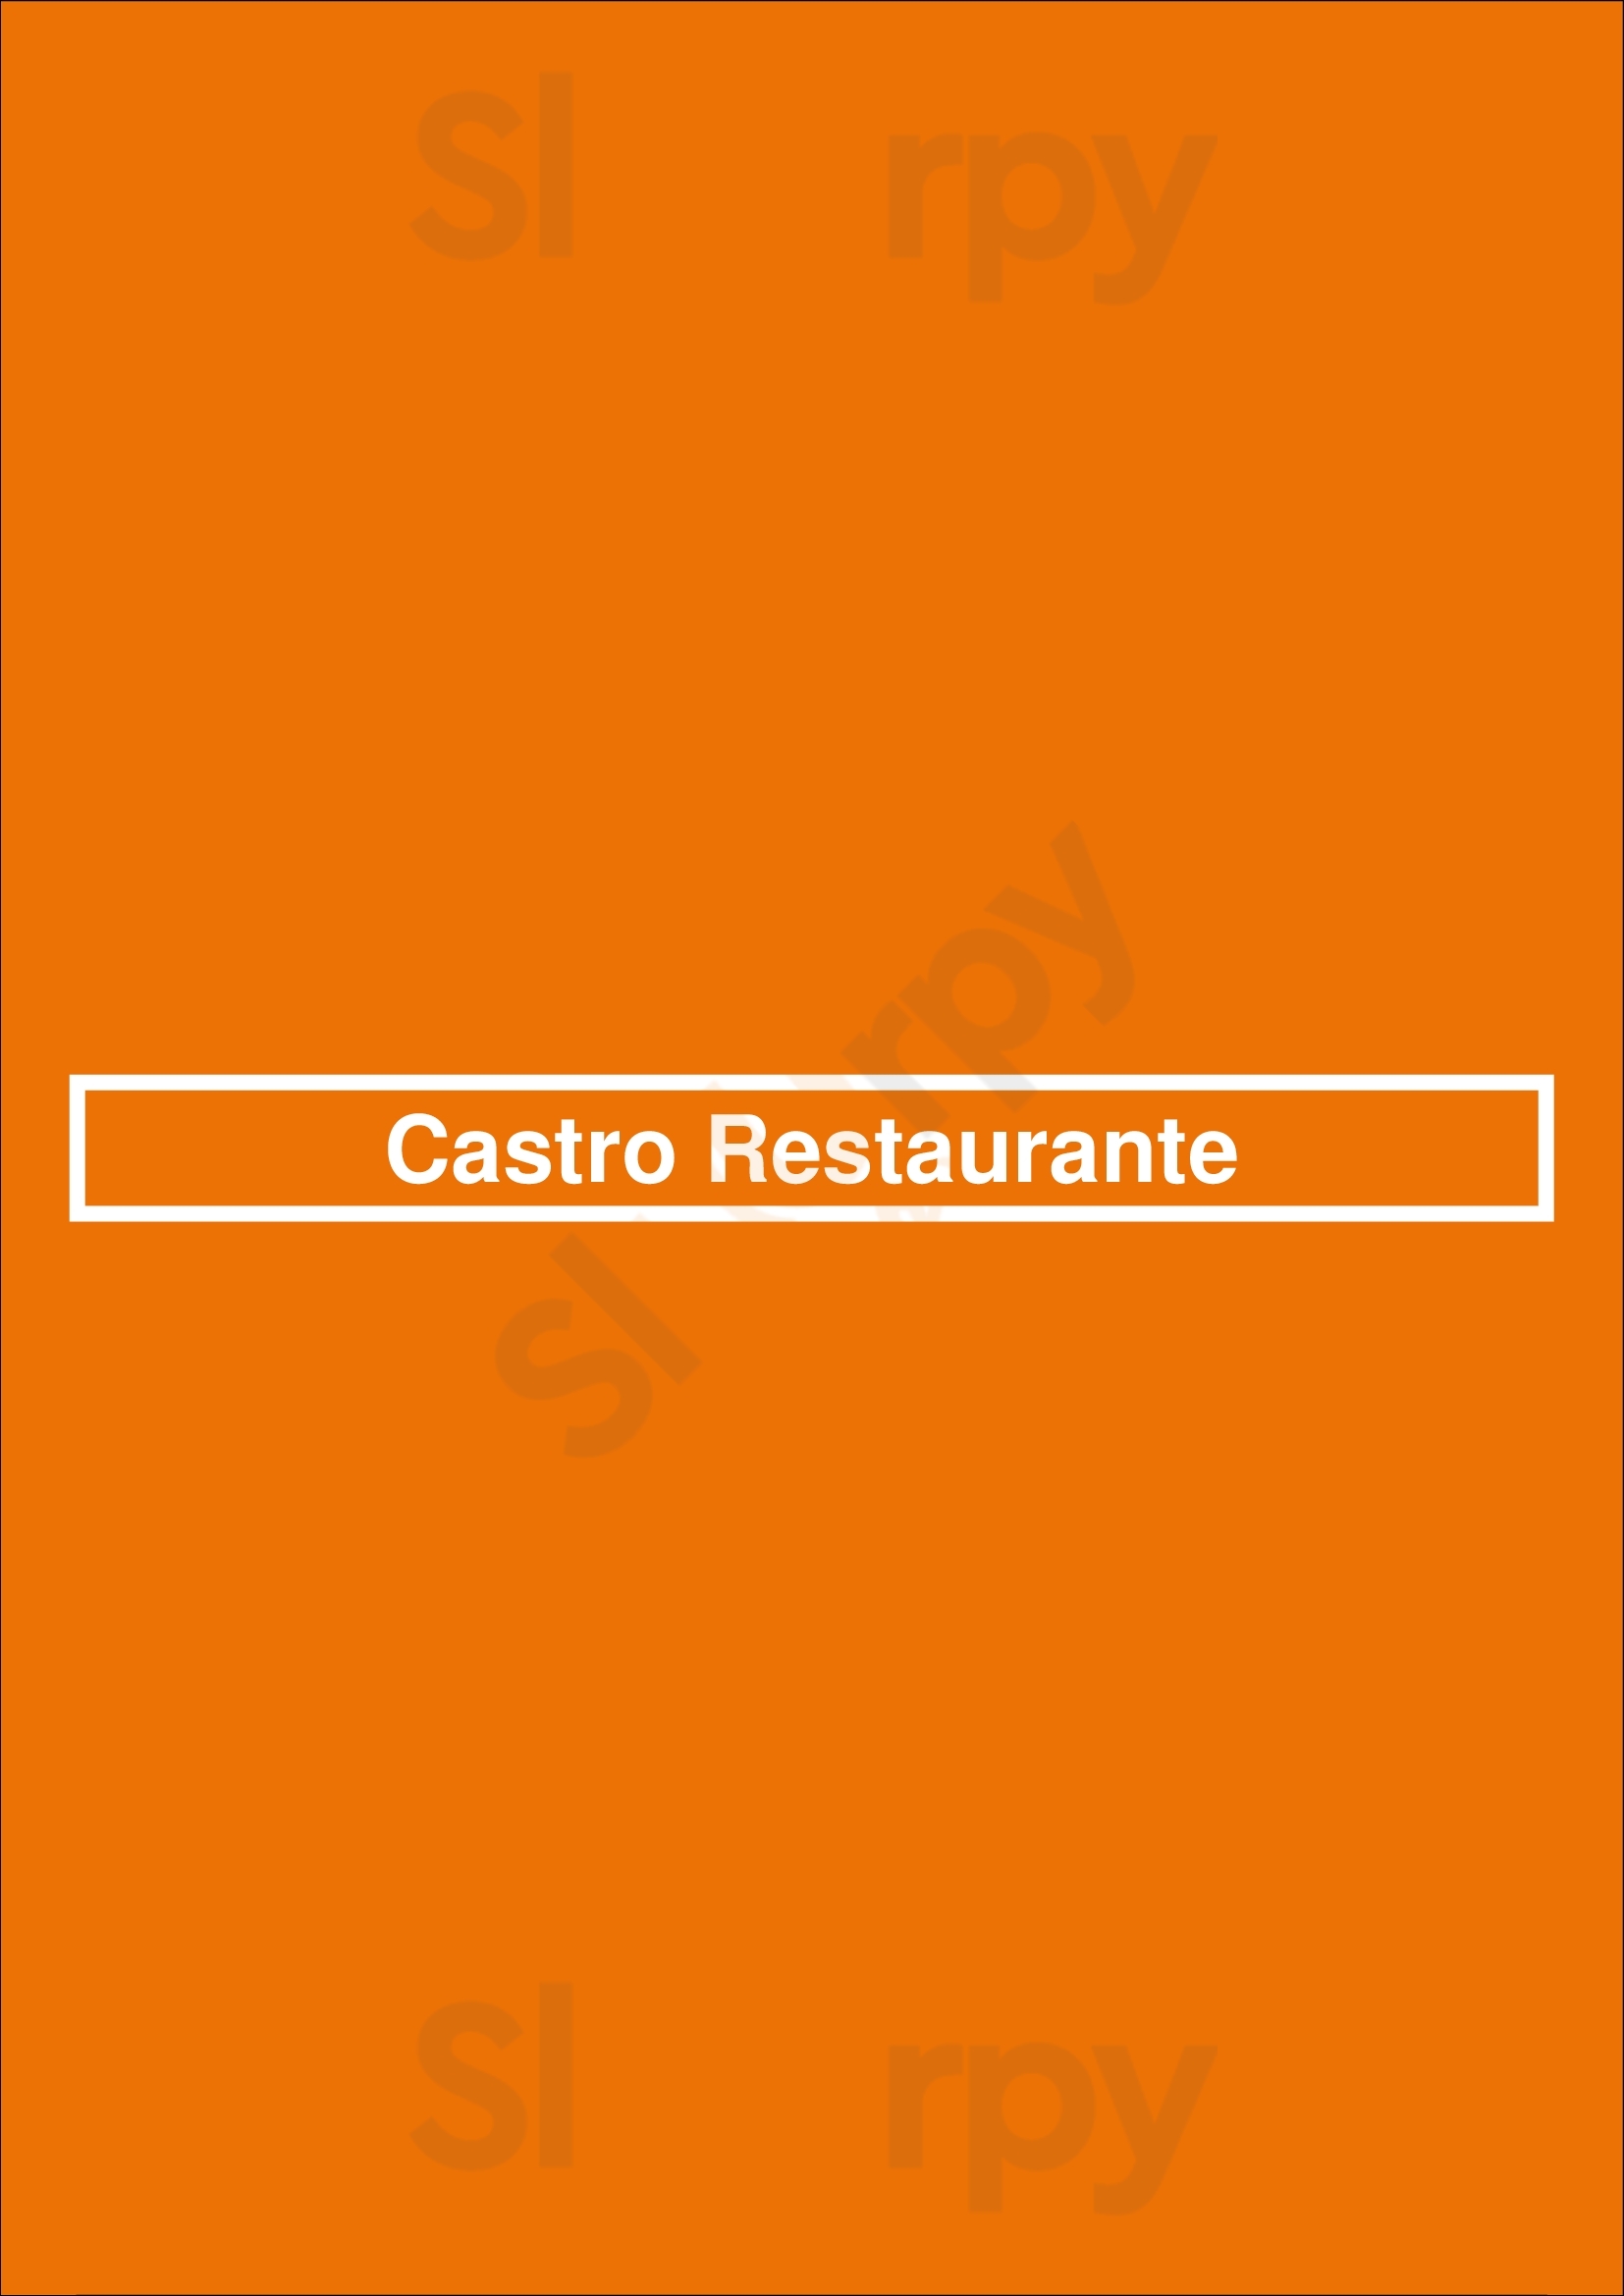 Castro Restaurante Lisboa Menu - 1